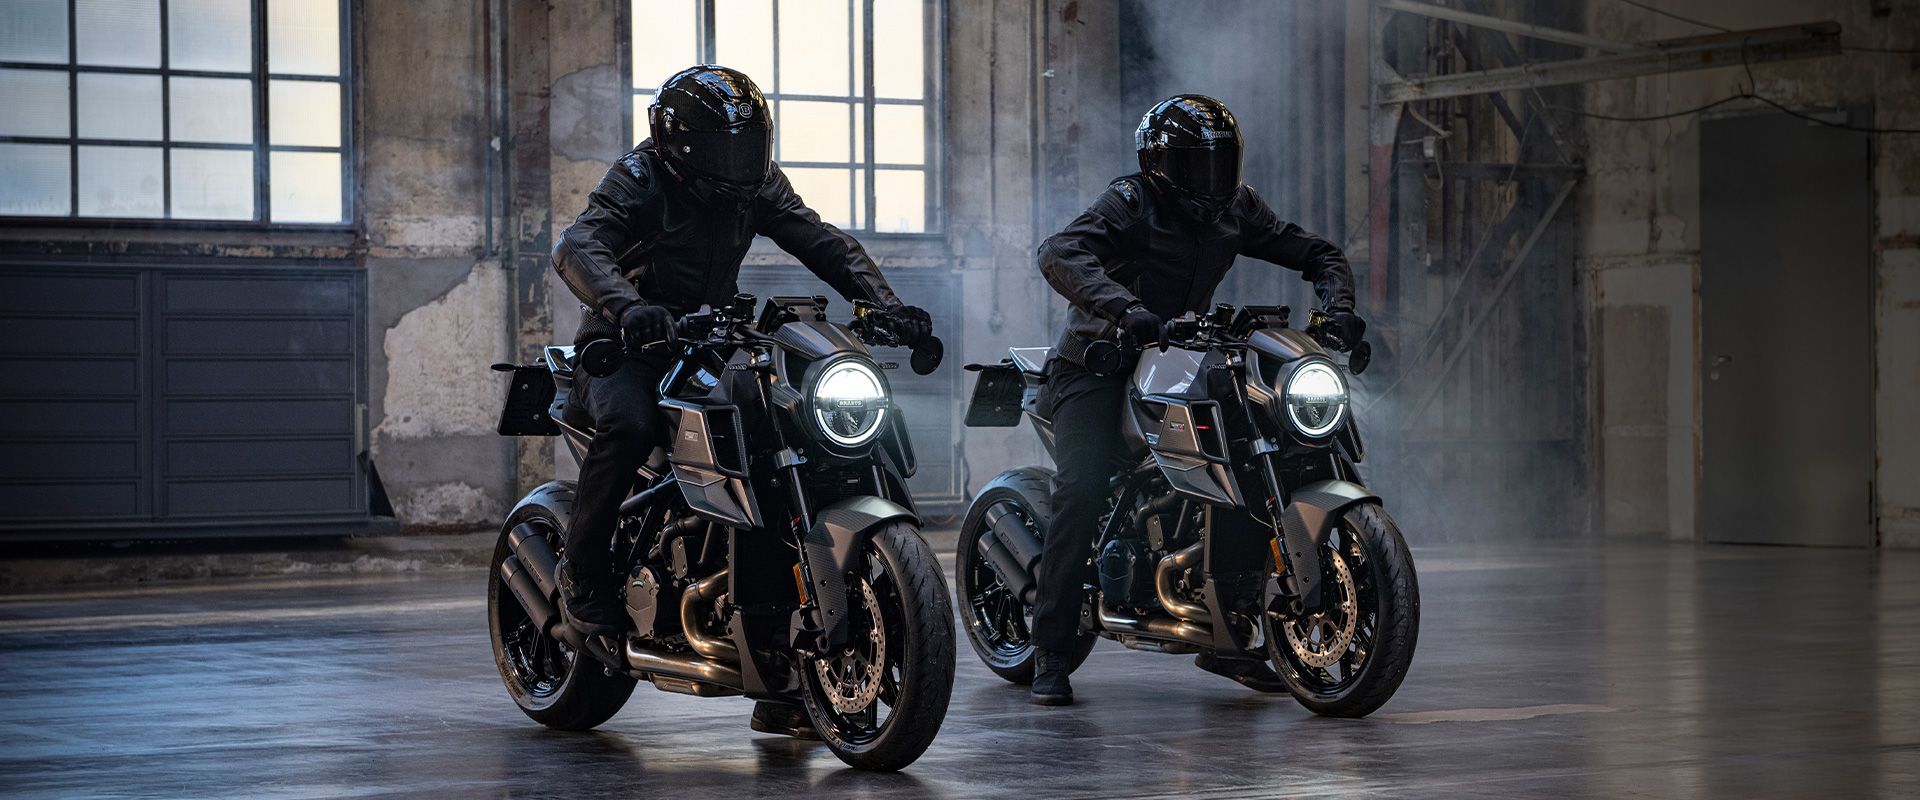 Top 10 Hypernaked Motorcycles On Sale In 2023